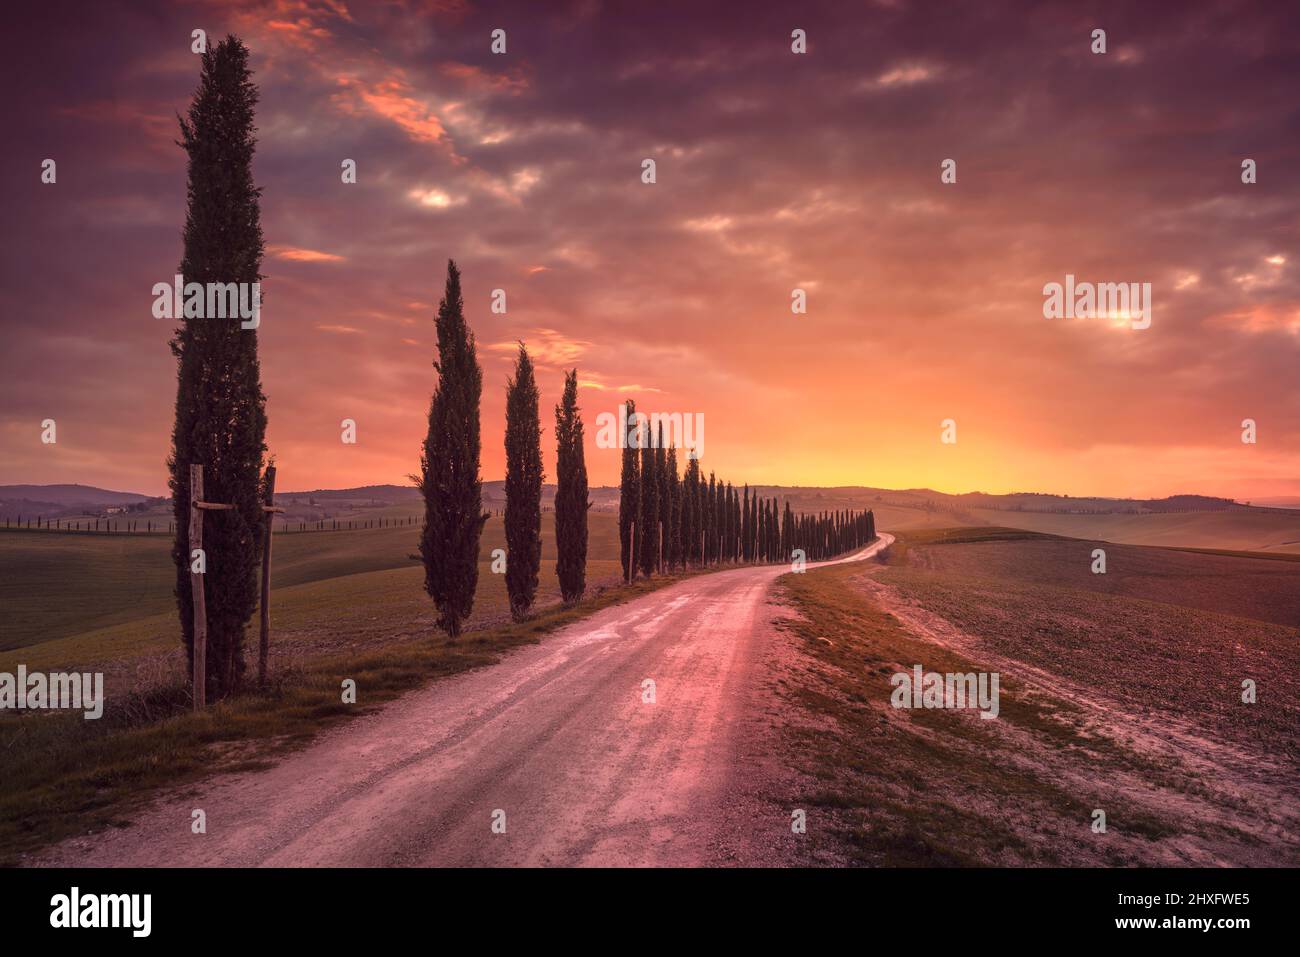 Zypressen gesäumte Straße in der Landschaft der Toskana nach Sonnenuntergang. Ville di Corsano, Siena, Italien Stockfoto